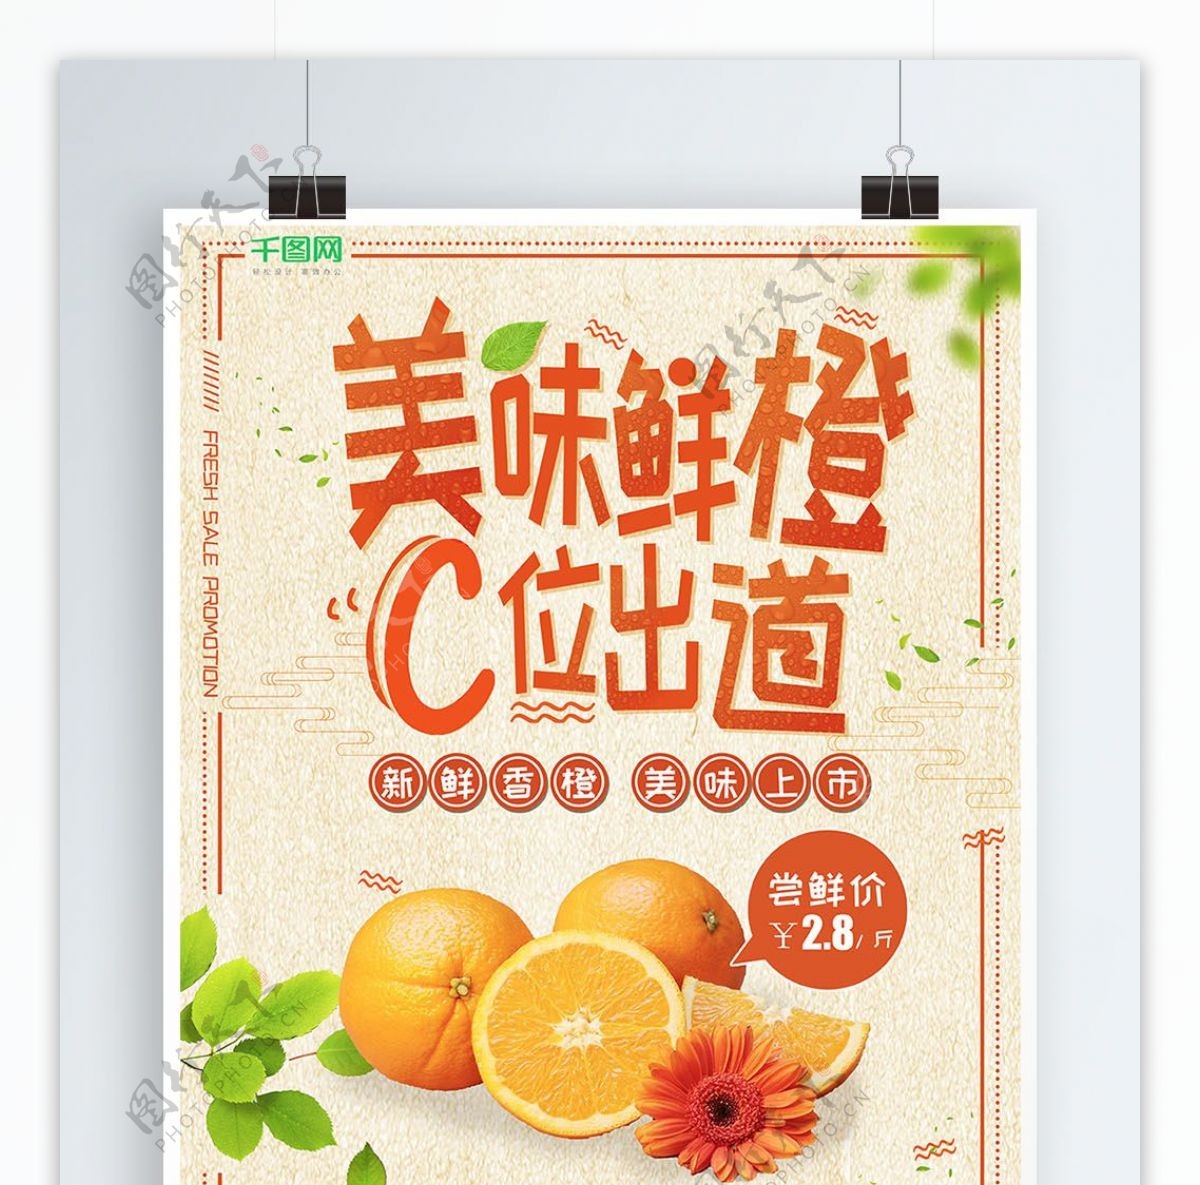 小清新美味鲜橙C位出道生鲜促销海报